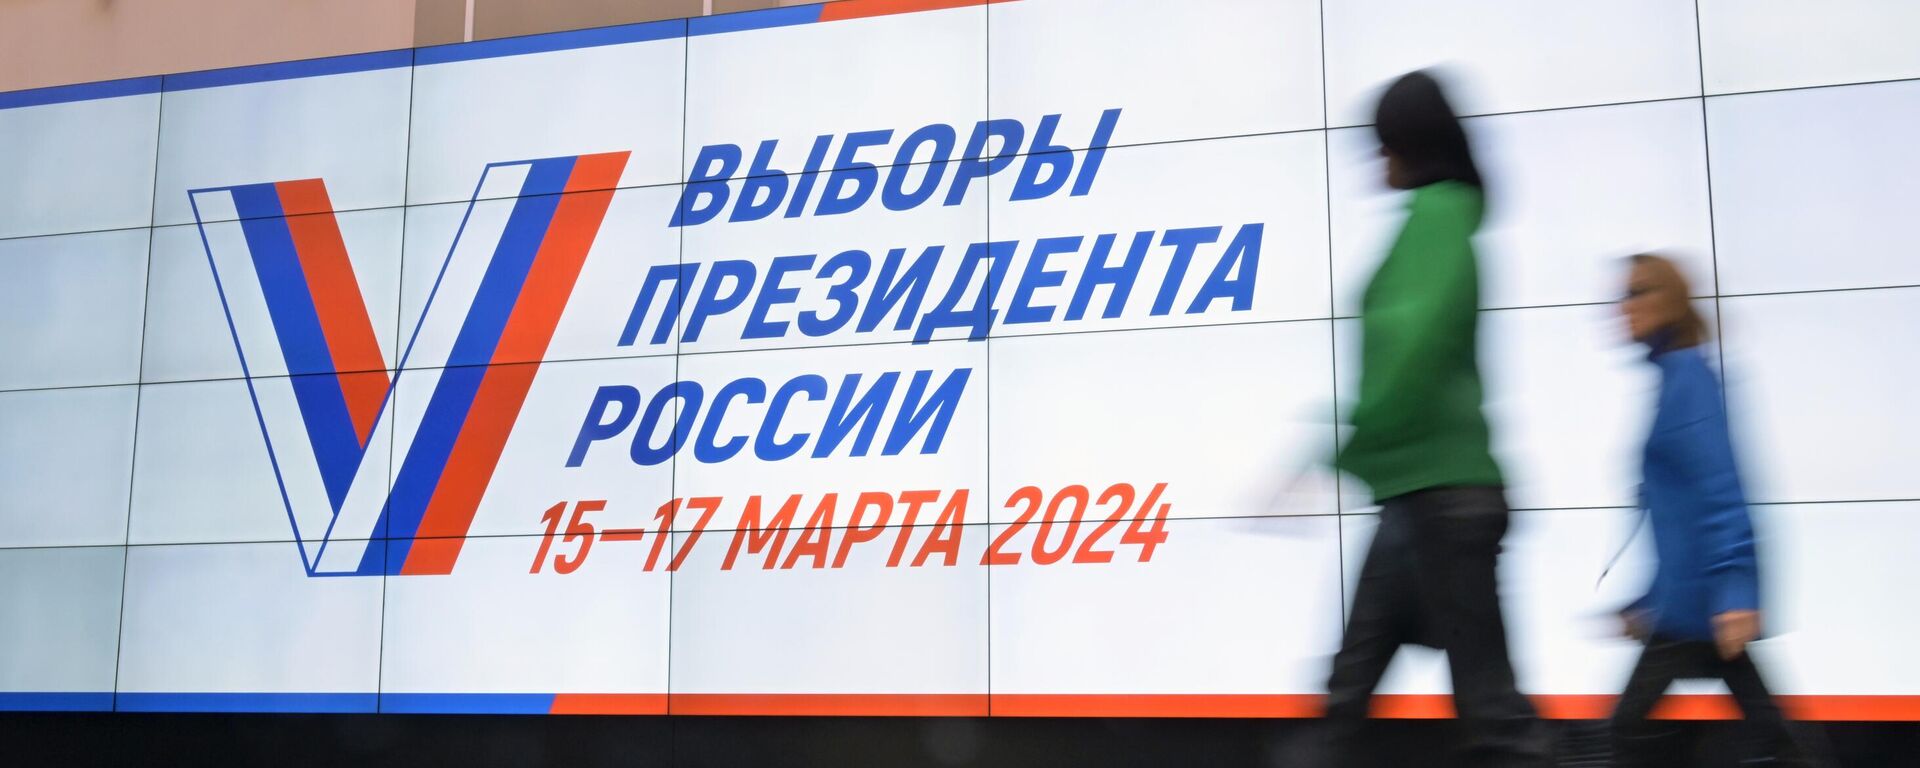 Elecciones presidenciales en Rusia de 2024 del 15 al 17 de marzo - Sputnik Mundo, 1920, 15.03.2024